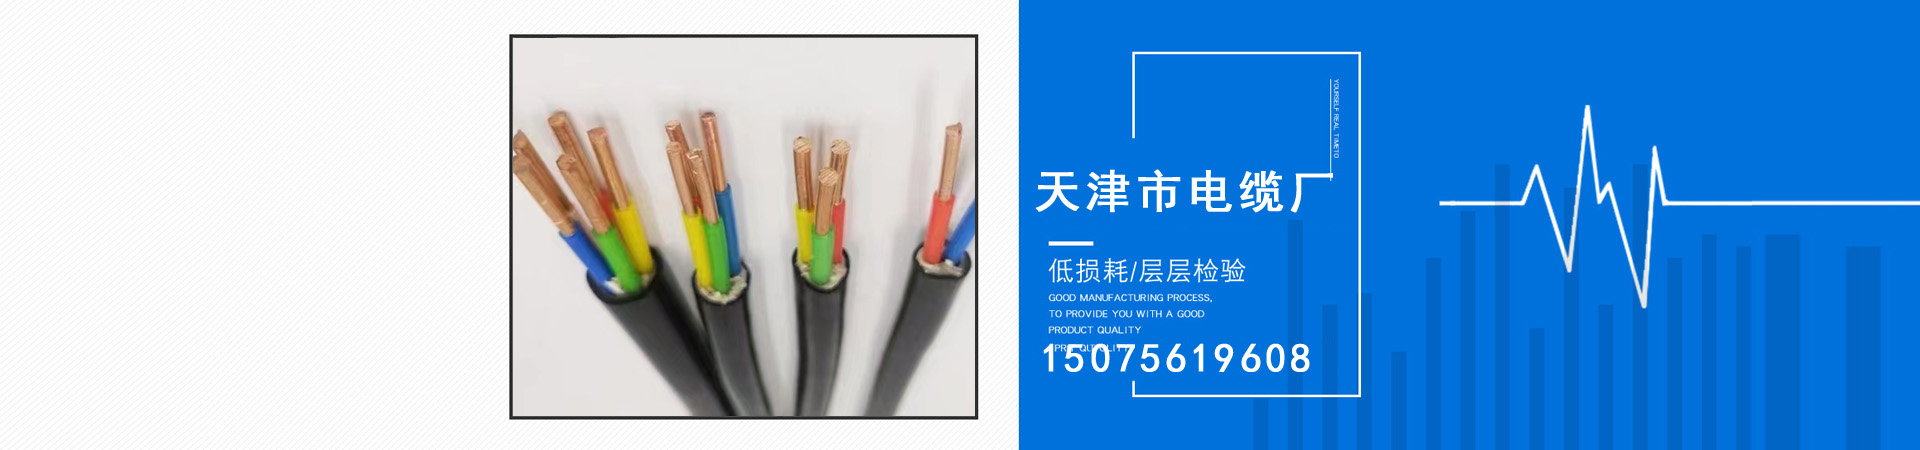 信号电缆、南昌本地信号电缆、南昌、南昌信号电缆